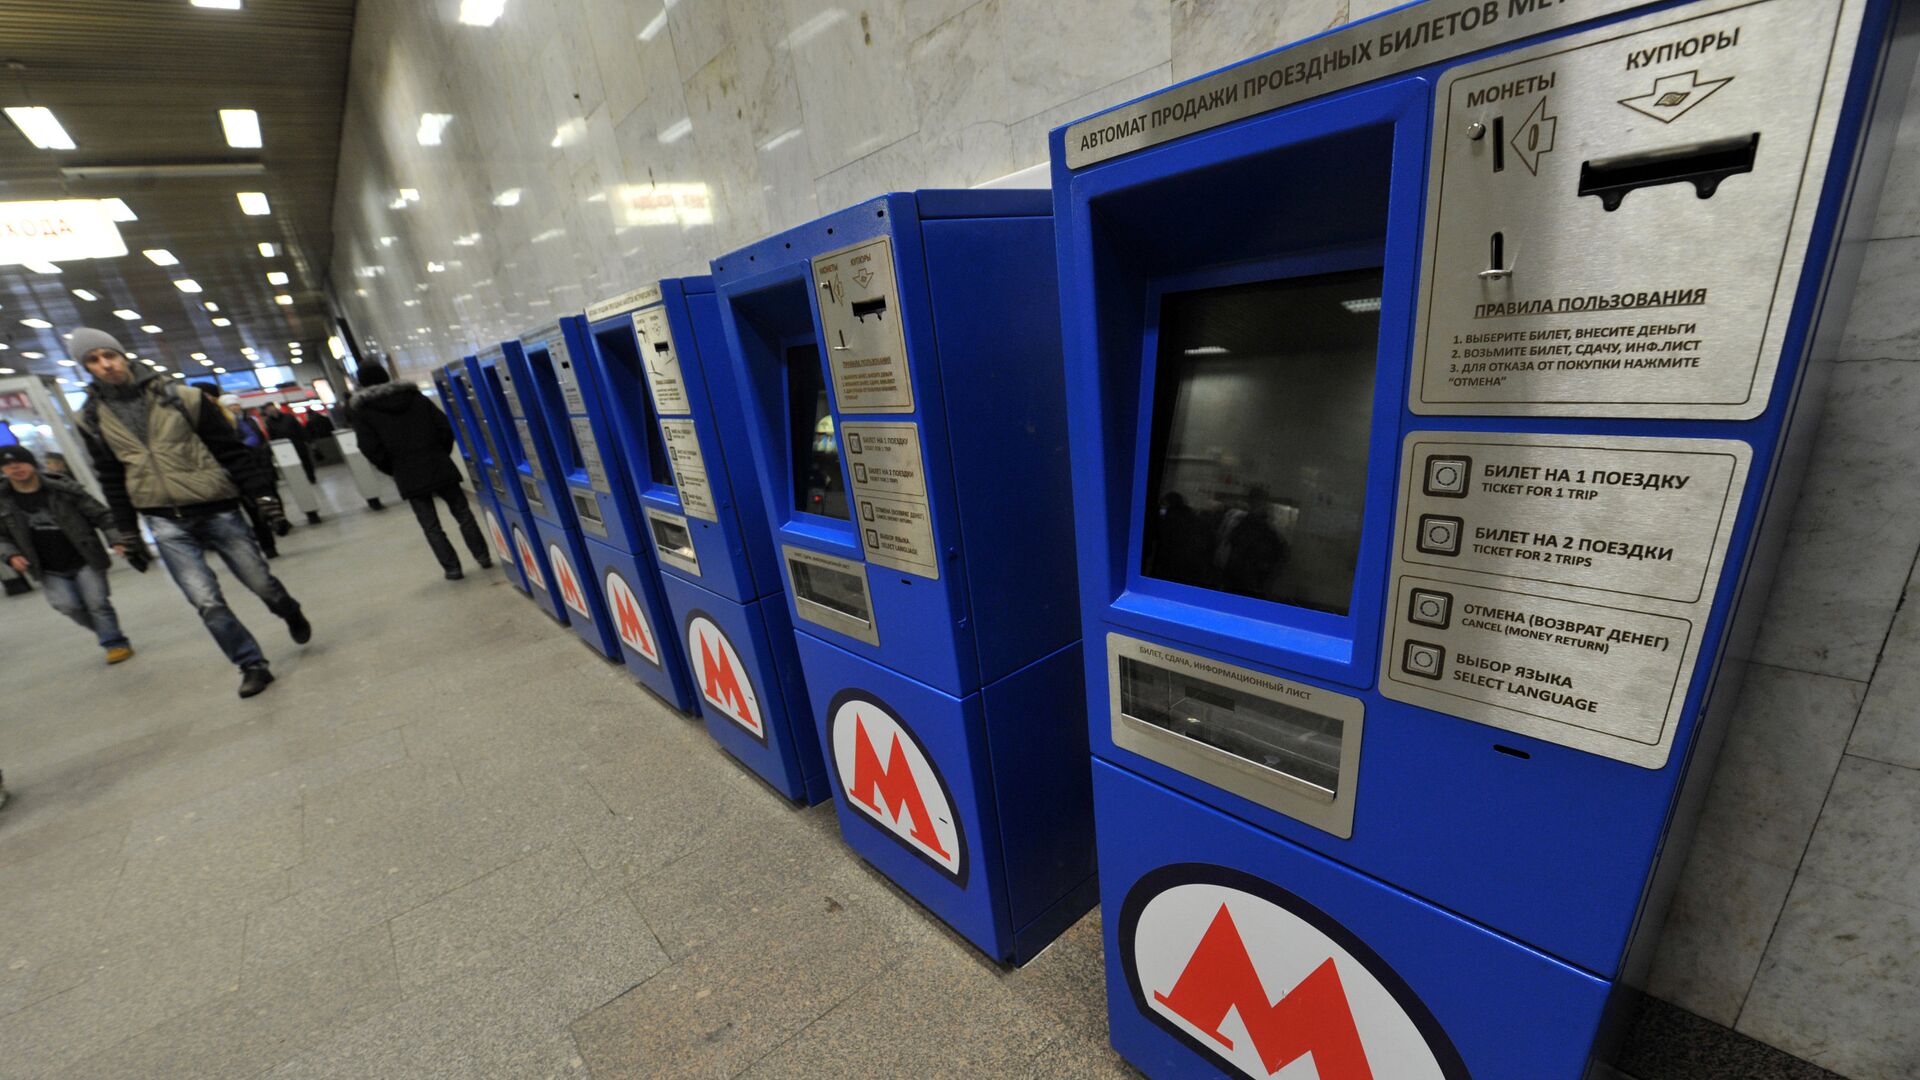 Купить поездки метро. Терминал в метро. Билетные автоматы в метро. Автомат в метро для пополнения. Автомат Москвоског омтеро.